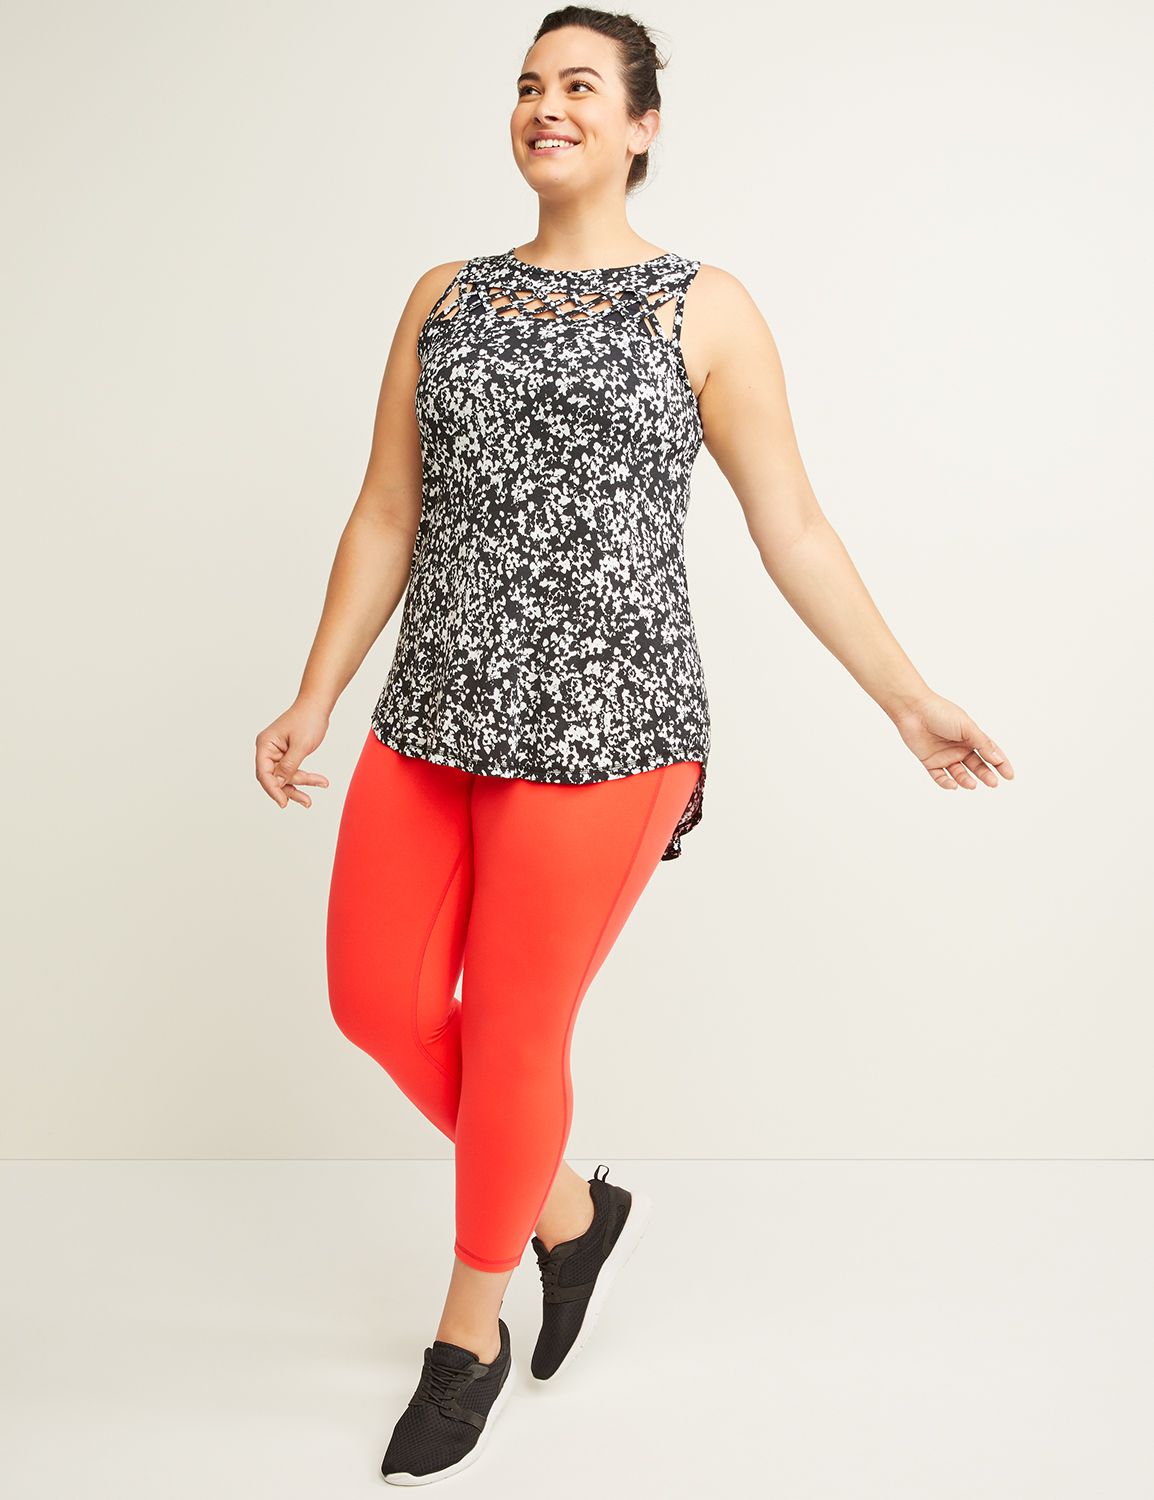 Plus Size Livi Active Workout Clothes & Activewear | Lane Bryant